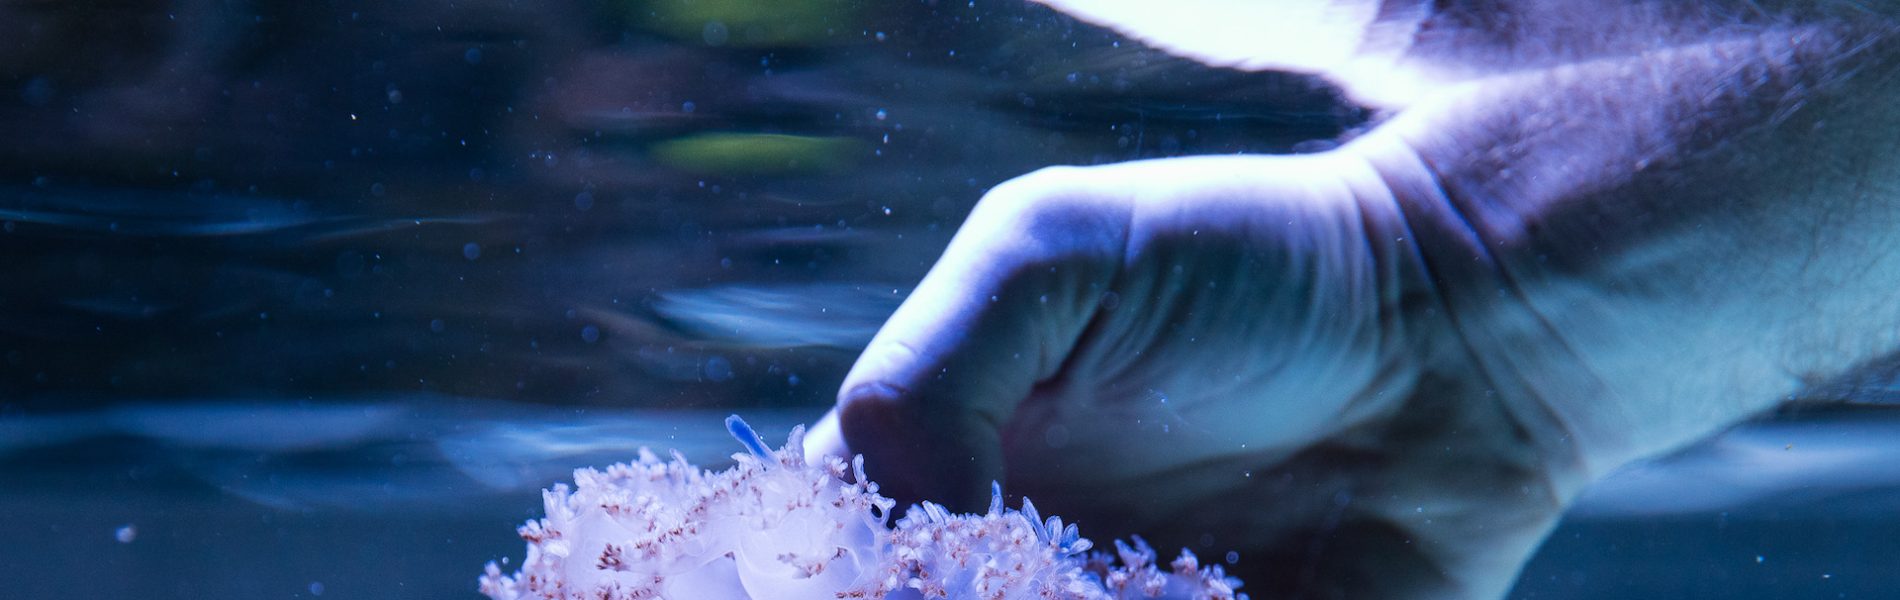 Eine Hand taucht unter Wasser und greift eine Qualle